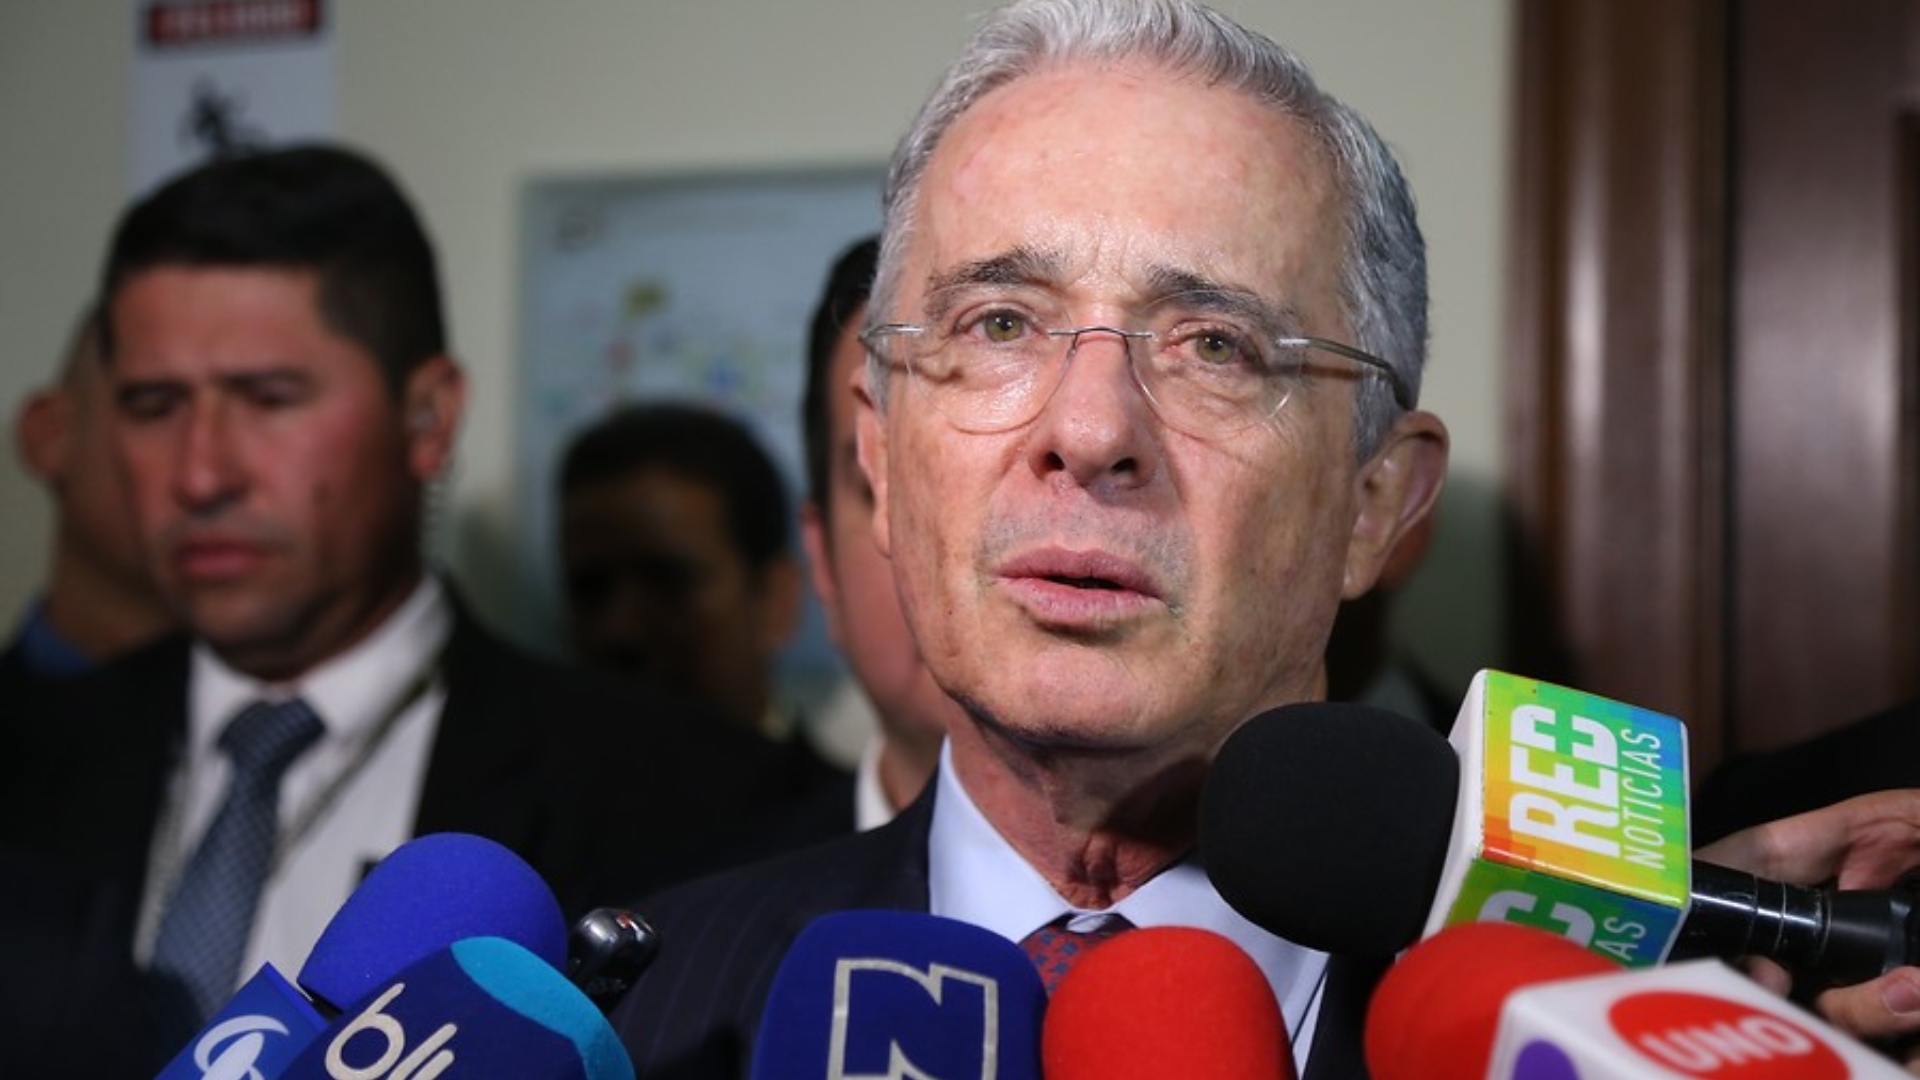 Video | “Uribe paraco, saludos”: el mensaje que fue leído en plena transmisión de los Juegos Olímpicos